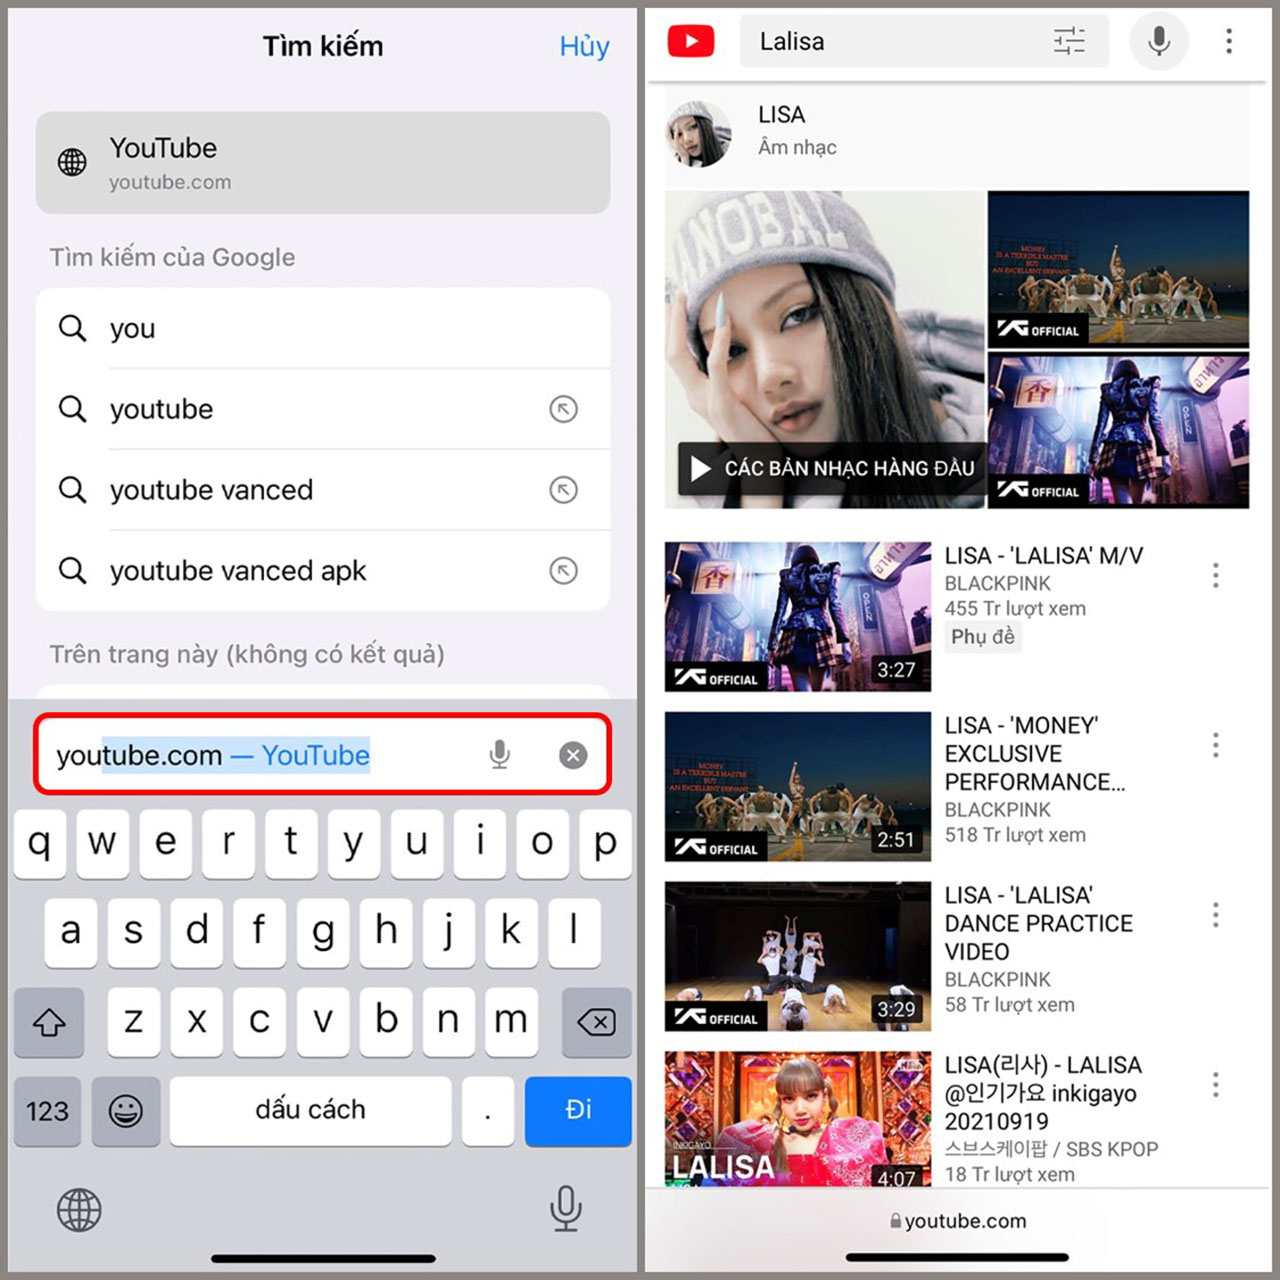 Chế độ xem YouTube tắt màn hình iOS giúp tiết kiệm pin, đồng thời cho phép bạn vẫn có thể tiếp tục nghe nhạc hay xem video mà không sợ iPhone của bạn bị xóa nhạc. Hãy xem ngay ảnh để trải nghiệm tiện ích này nhé!